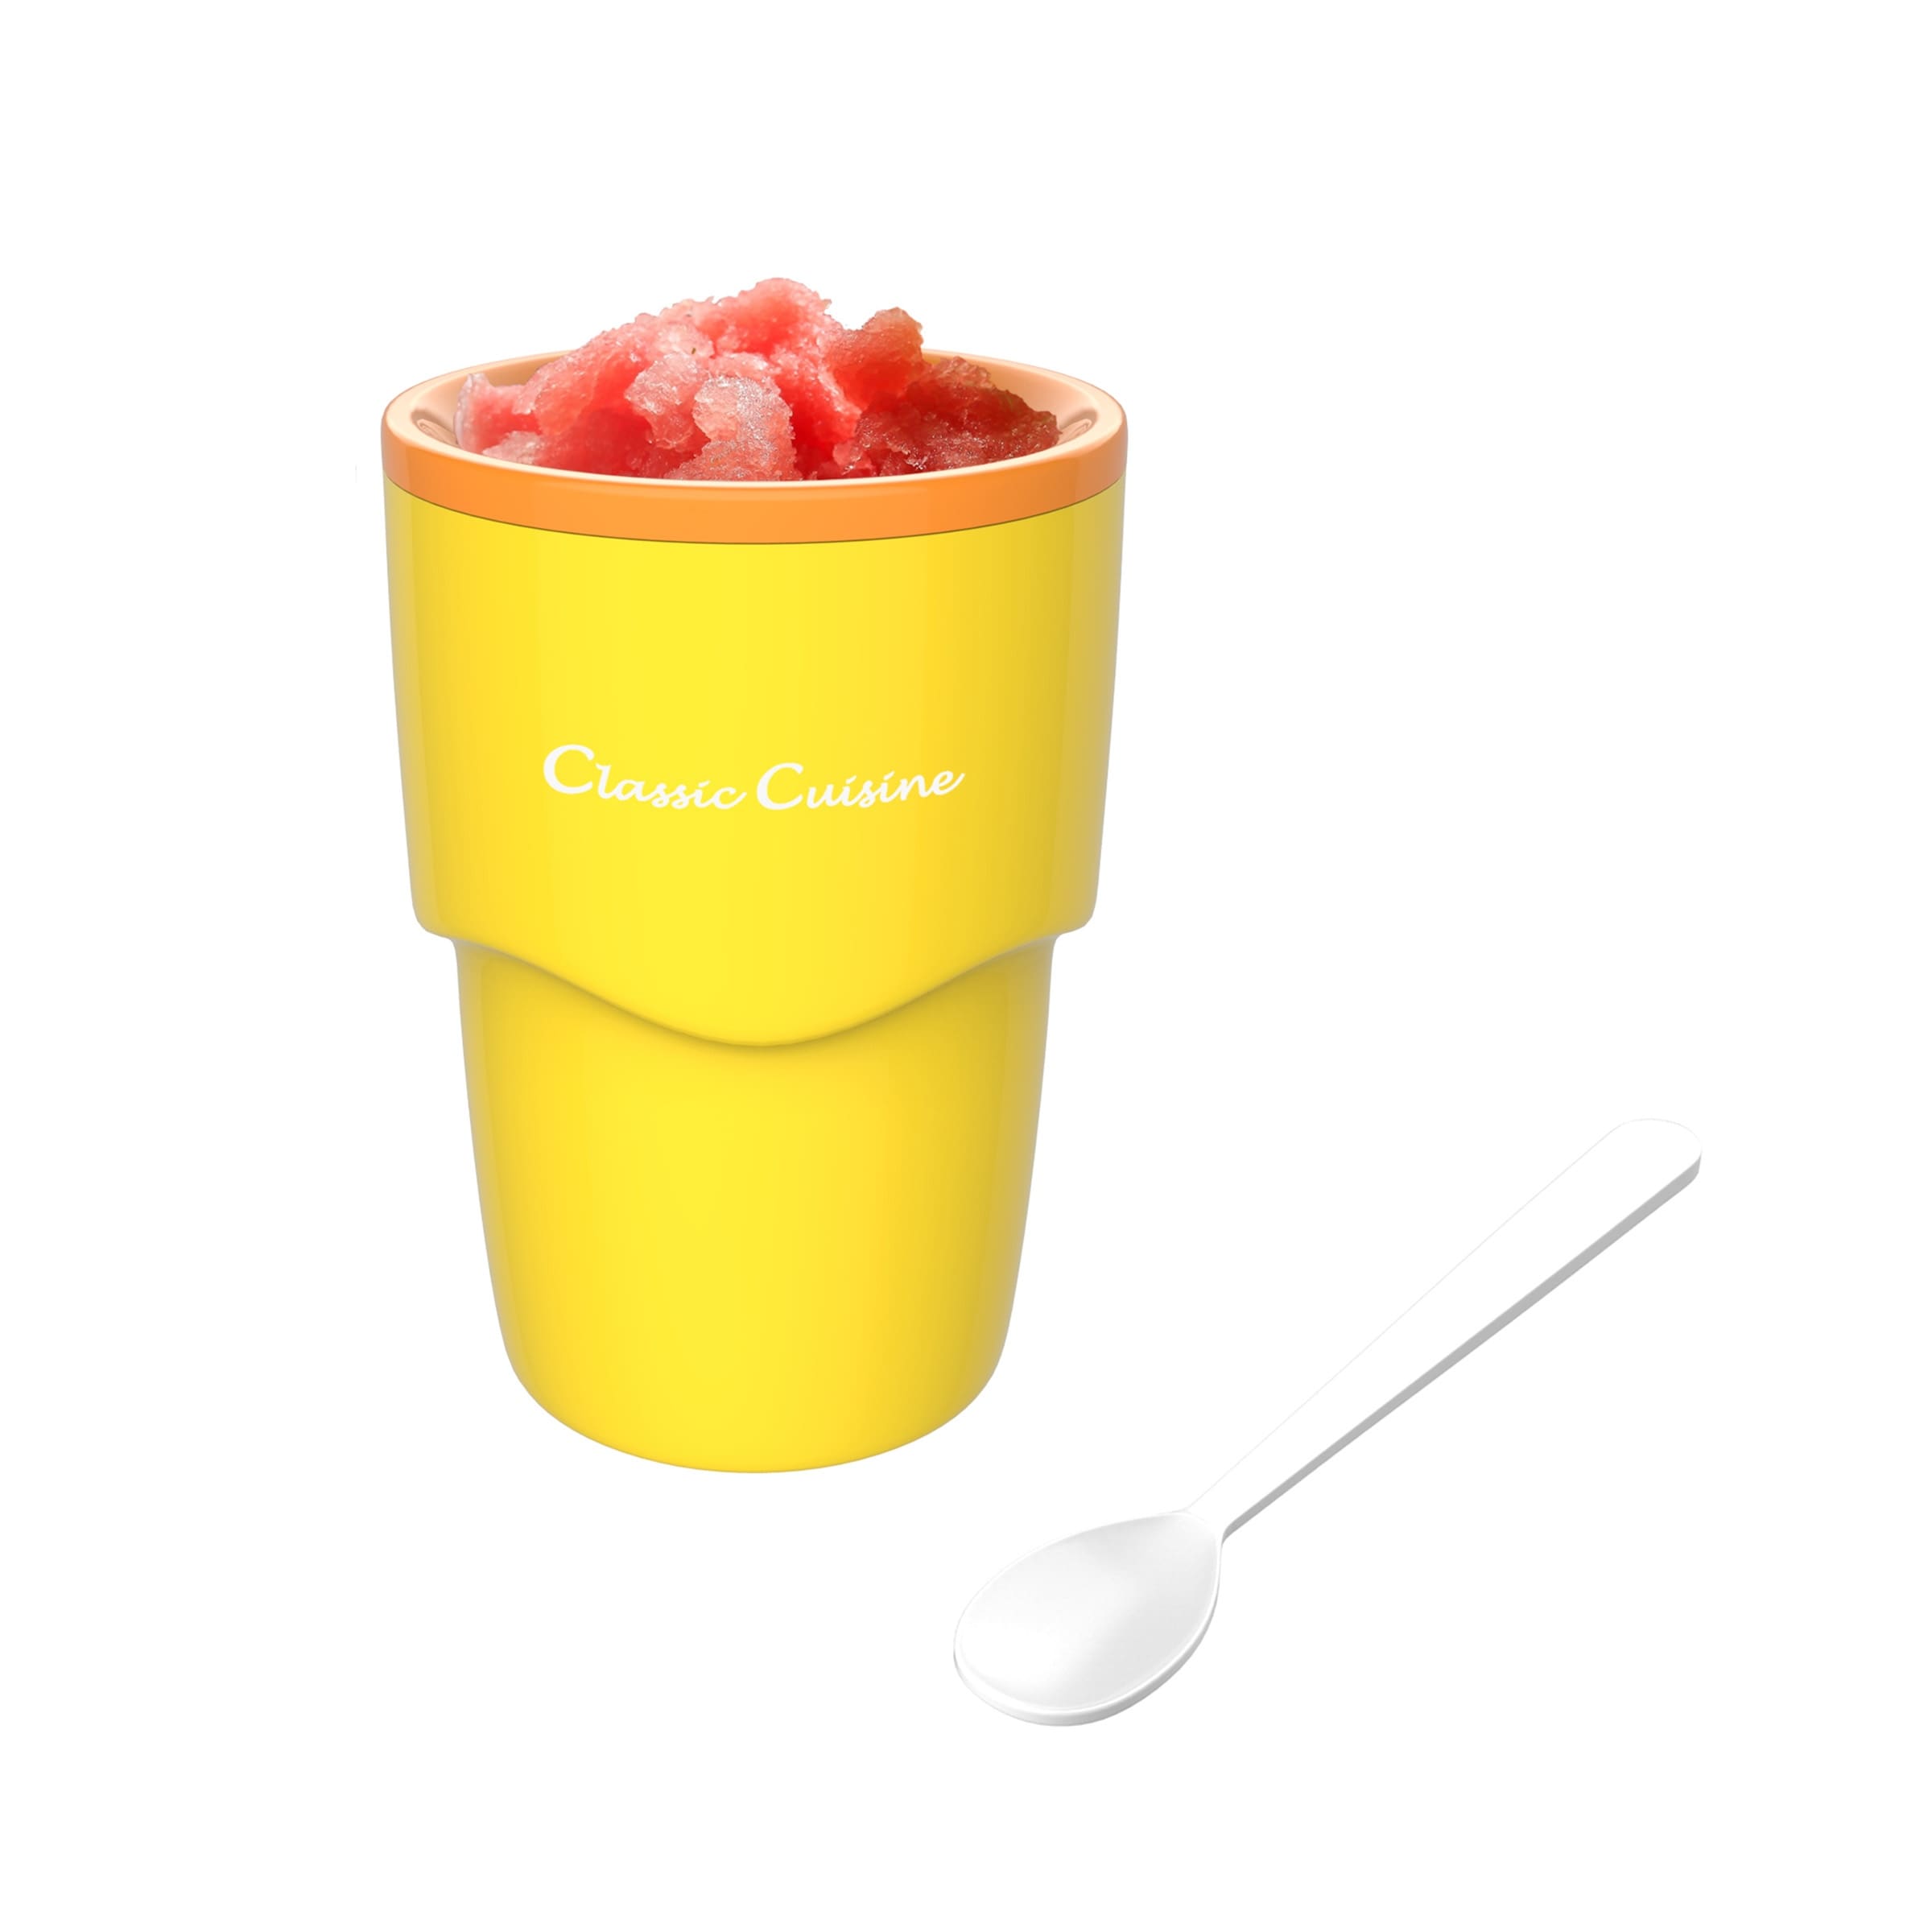 https://ak1.ostkcdn.com/images/products/is/images/direct/874a2c6c1ed13528d8598d2d98edacdc87275b48/Slushy-Maker-Single-Serving-Frozen-Treat-Cup-Classic-Cuisine.jpg